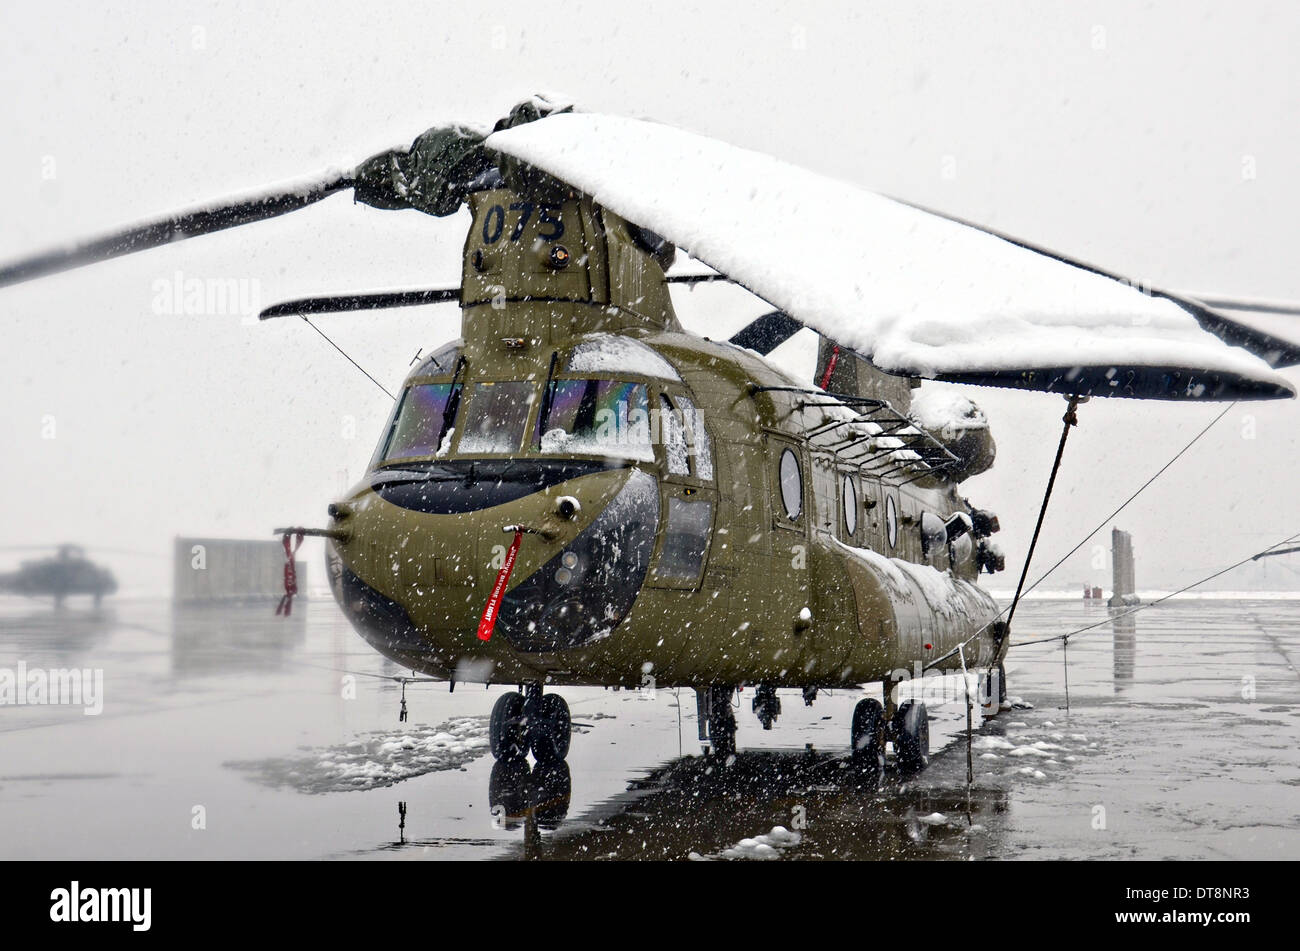 La neve copre un esercito USA CH-47 elicottero Chinook durante una tempesta di neve in inverno Febbraio 6, 2014 a Bagram Air Field, Afghanistan. Foto Stock